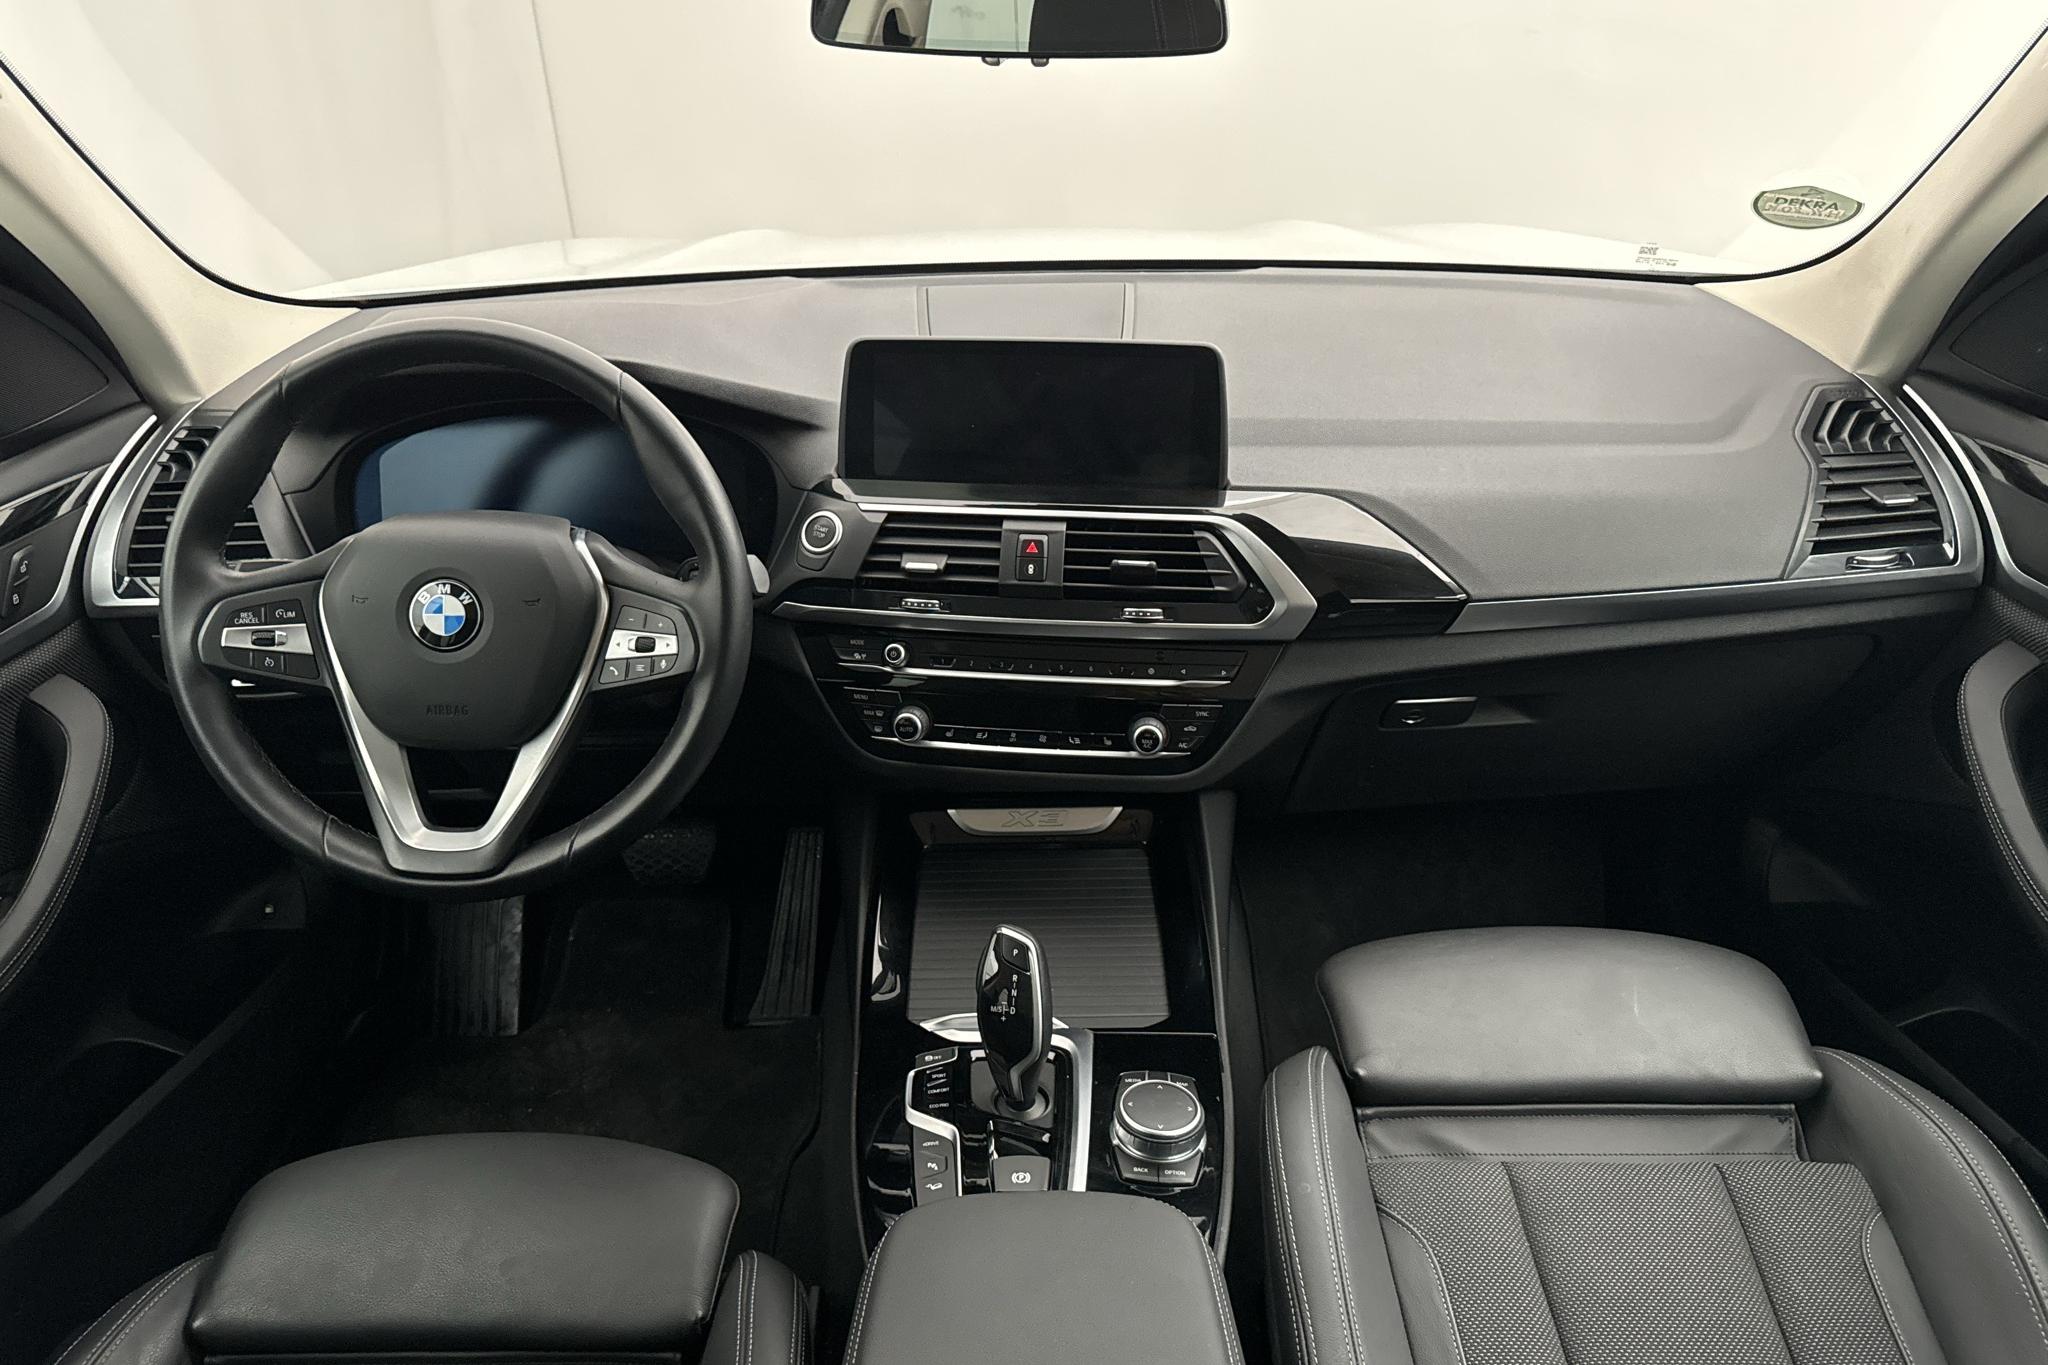 BMW X3 xDrive30e, G01 (292hk) - 51 450 km - Automatic - white - 2021